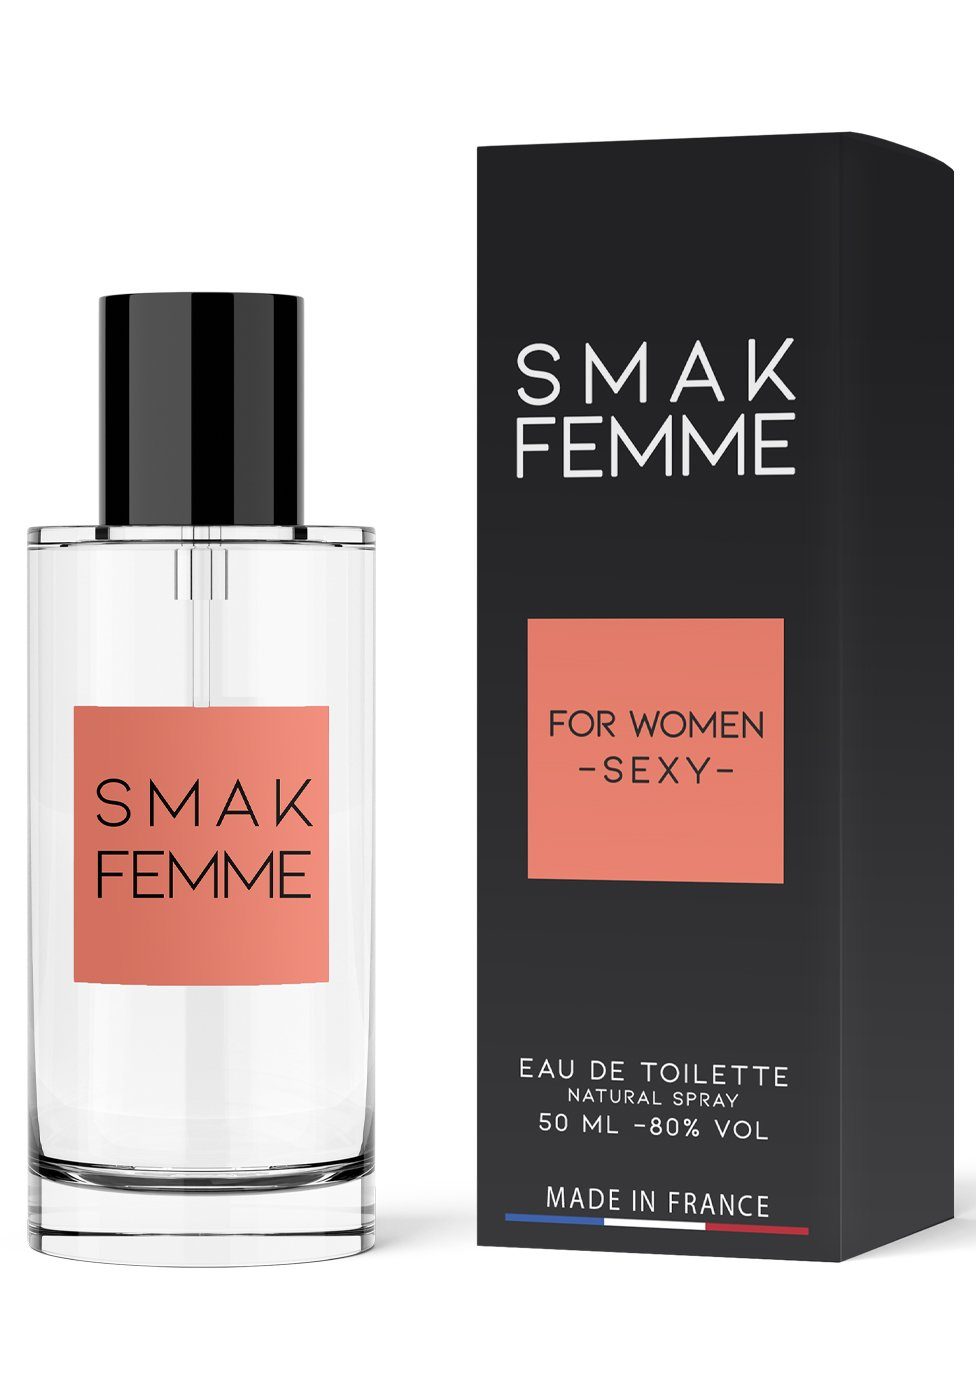 Parfum de Smak Eau Woman for Parfum Ruf